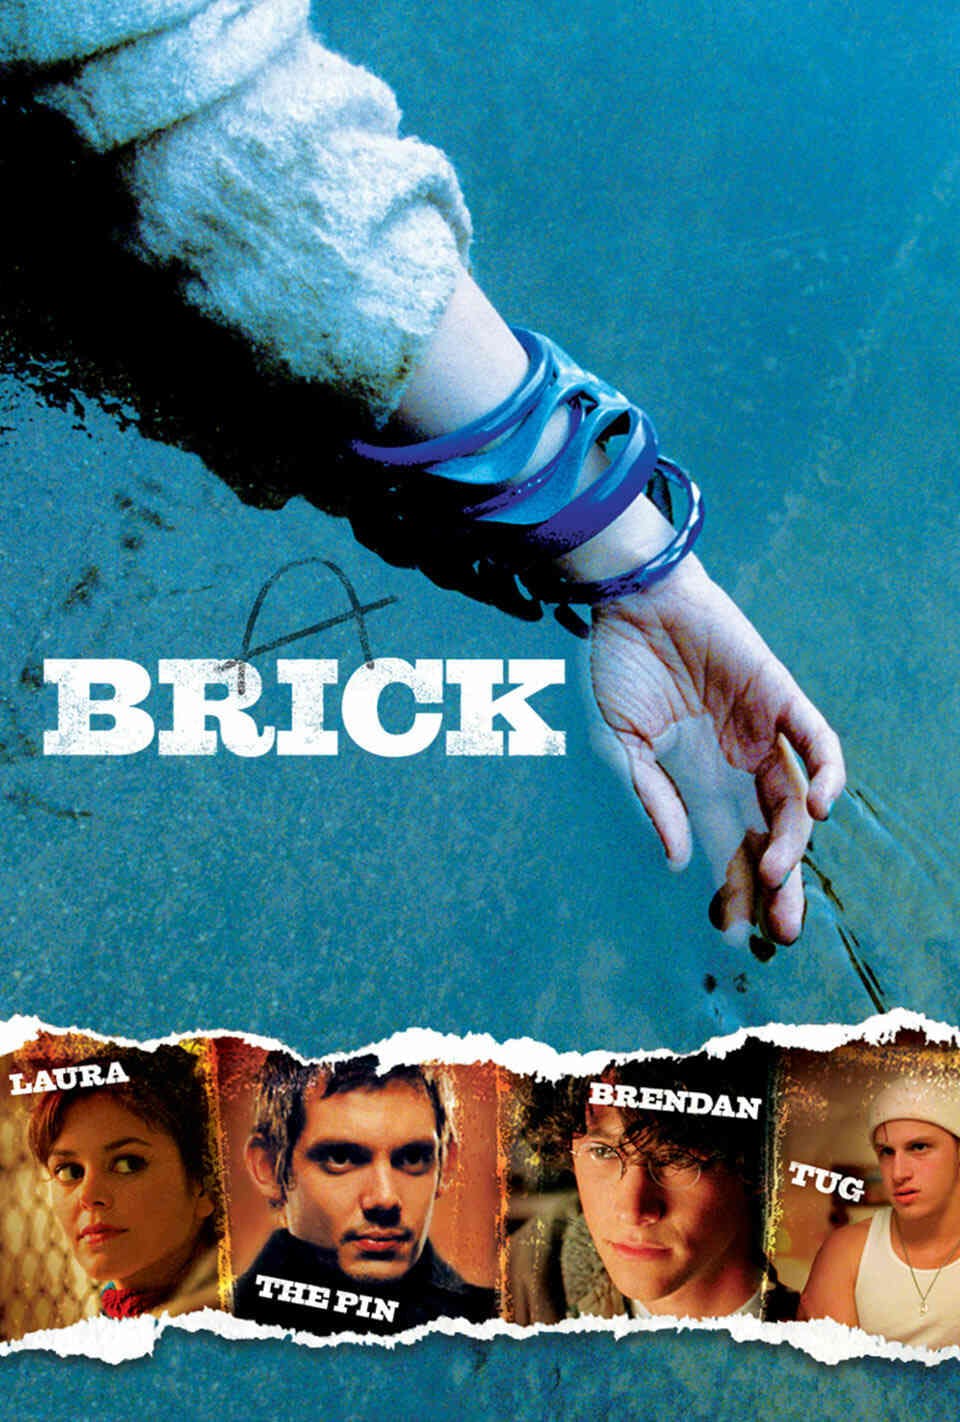 Read Brick screenplay.